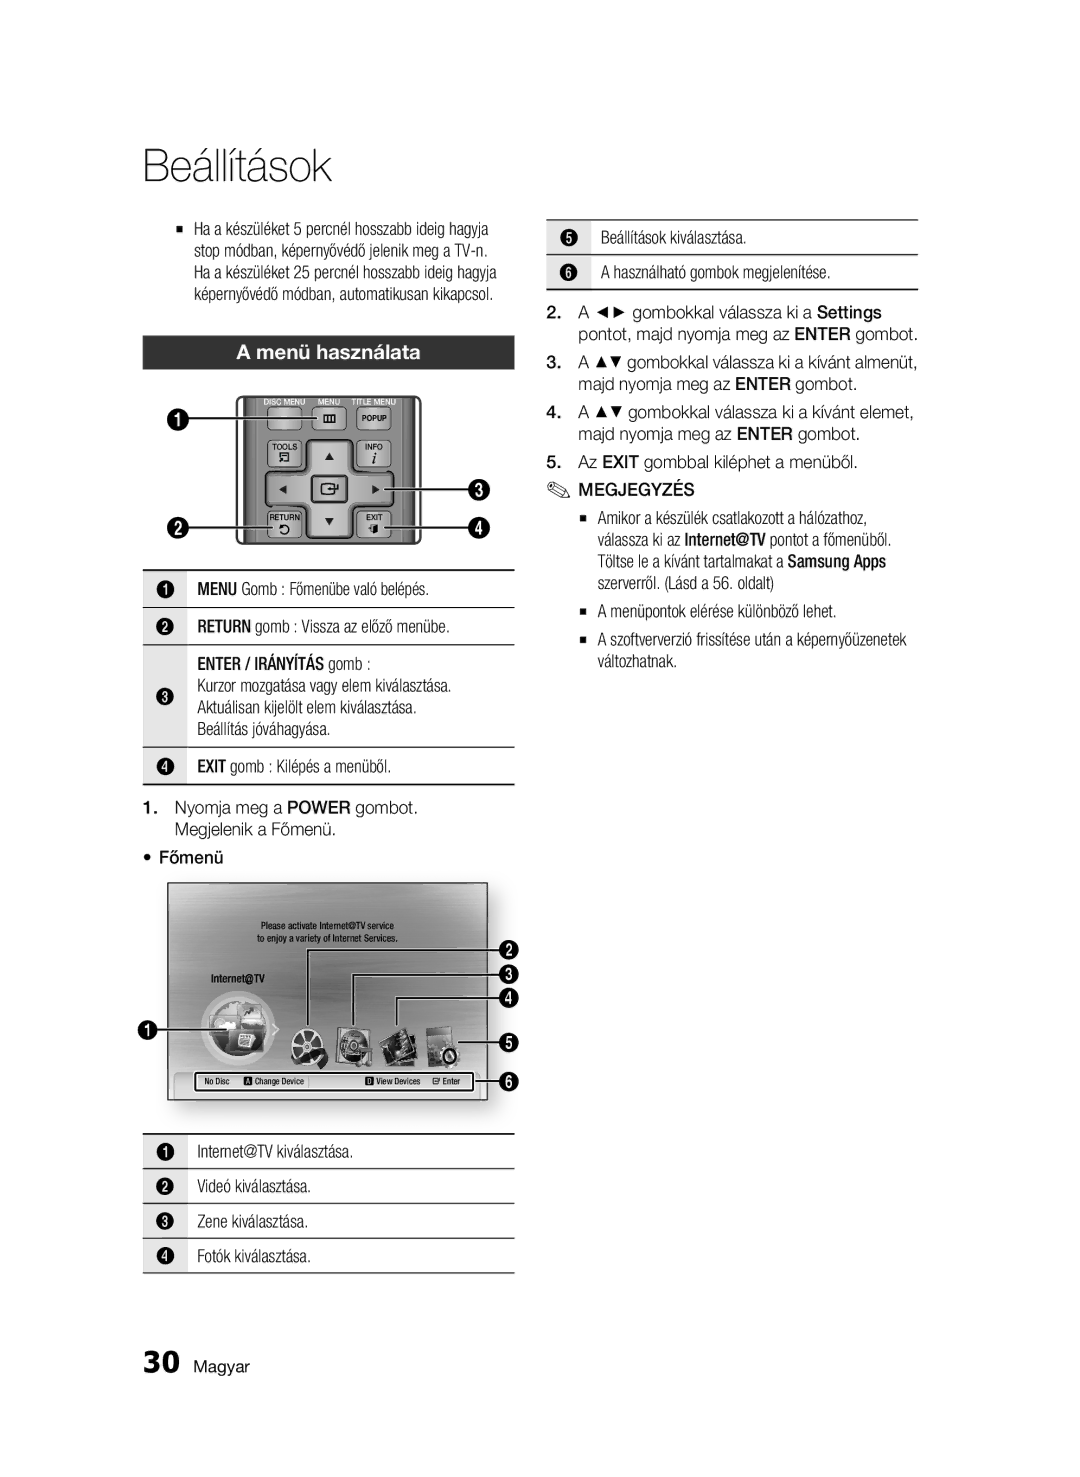 Samsung BD-C7500W/EDC manual Menü használata, Az Exit gombbal kiléphet a menüből, Kurzor mozgatása vagy elem kiválasztása 